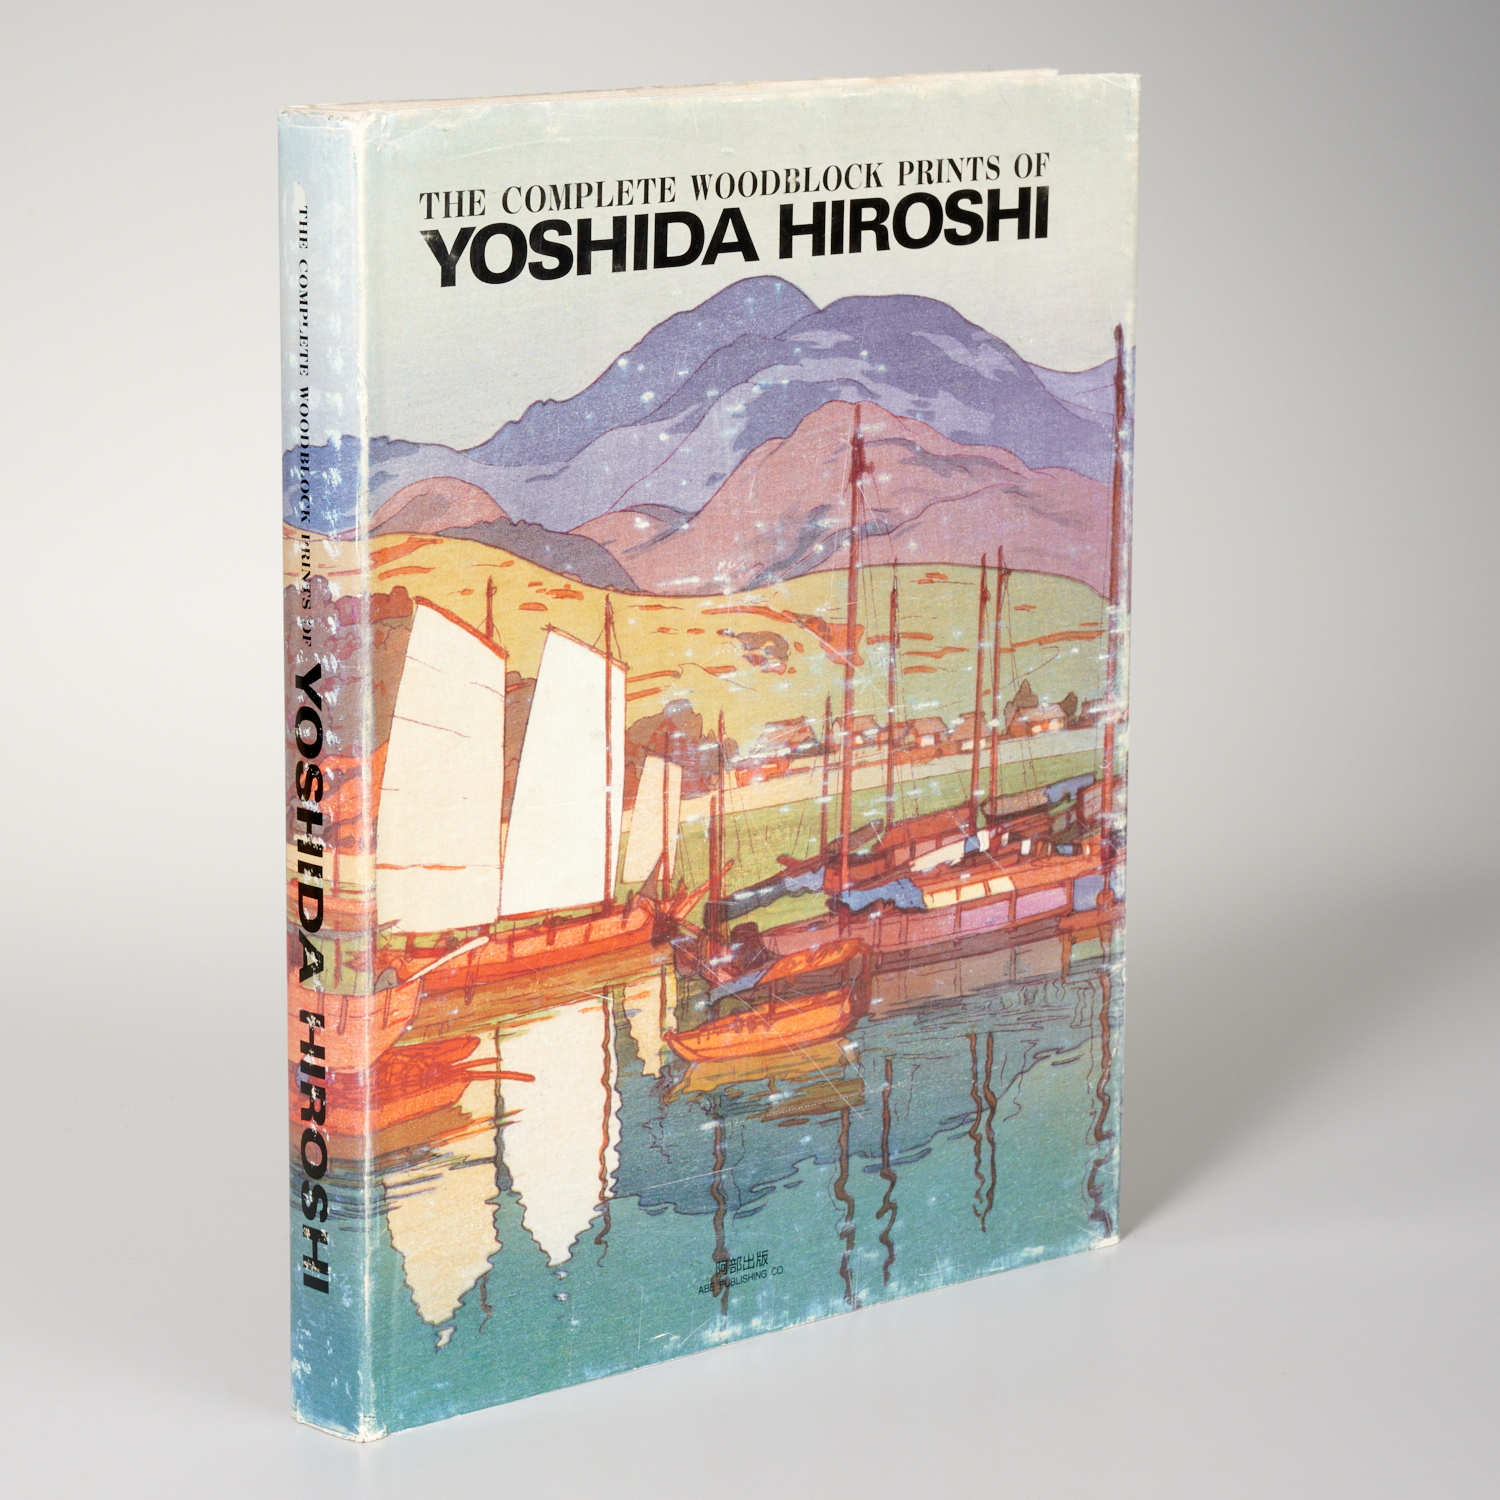 COMPLETE WOODBLOCK PRINTS OF YOSHIDA